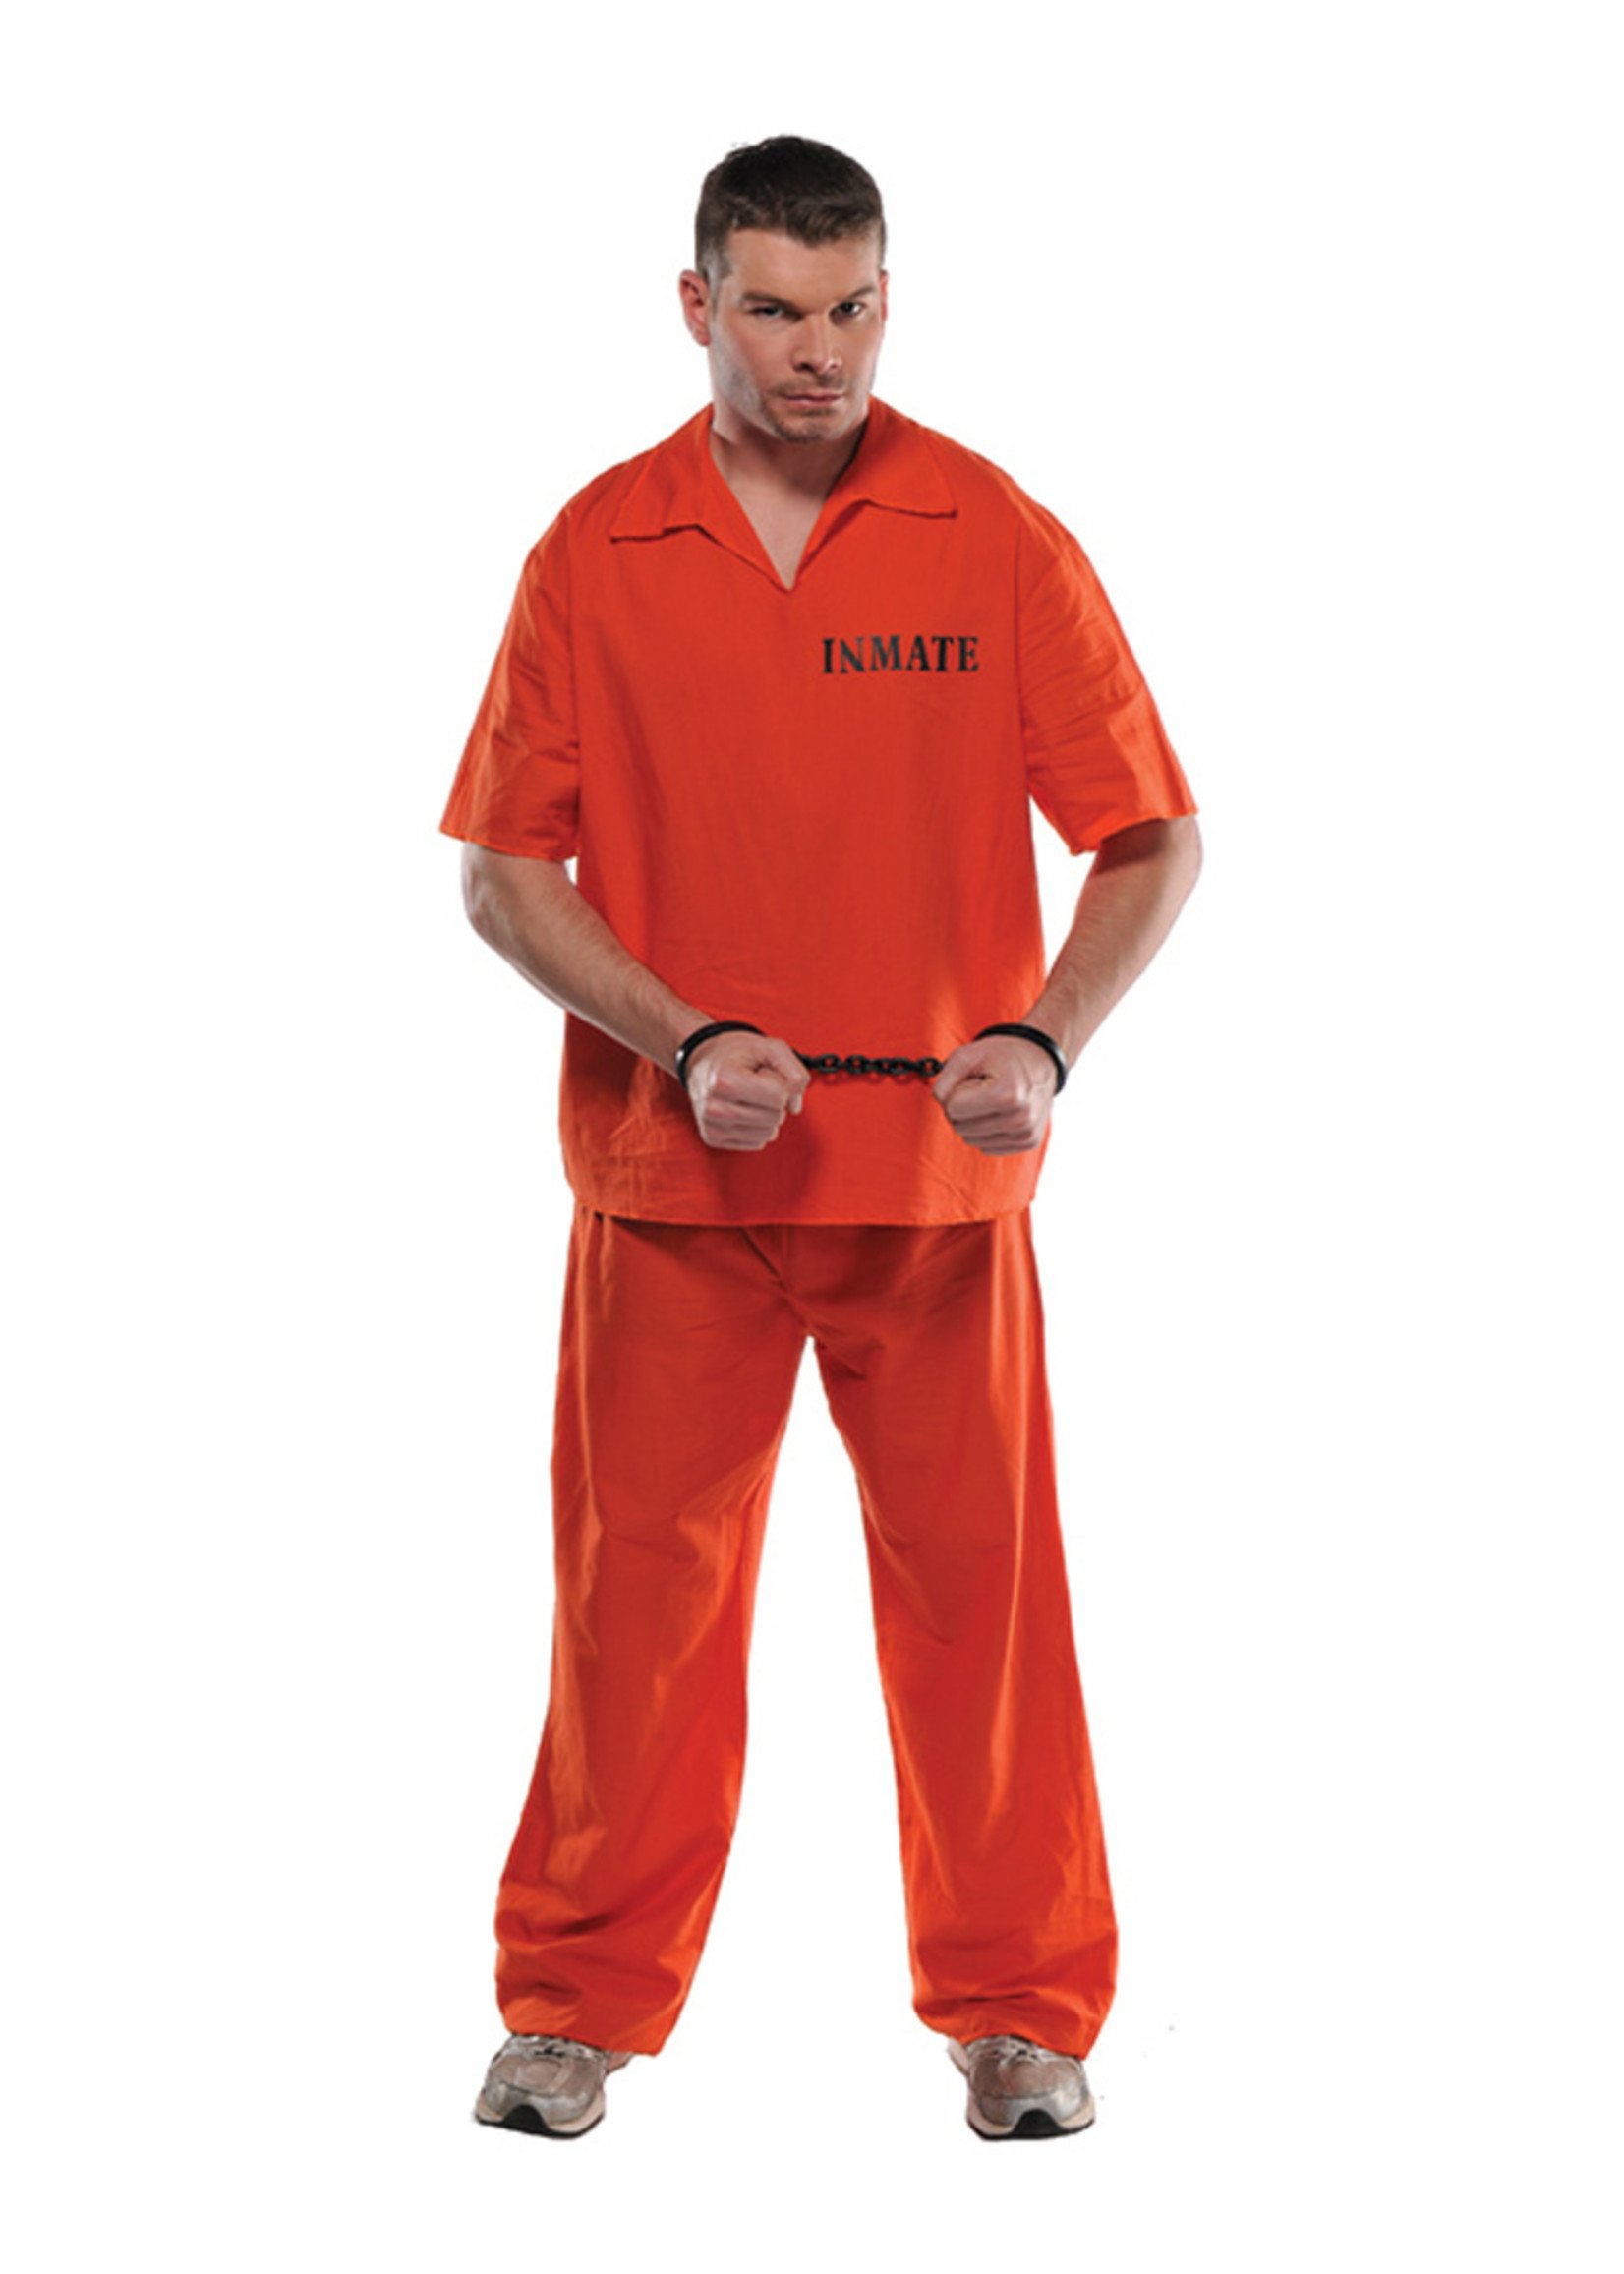 Inmate Costume - Men's